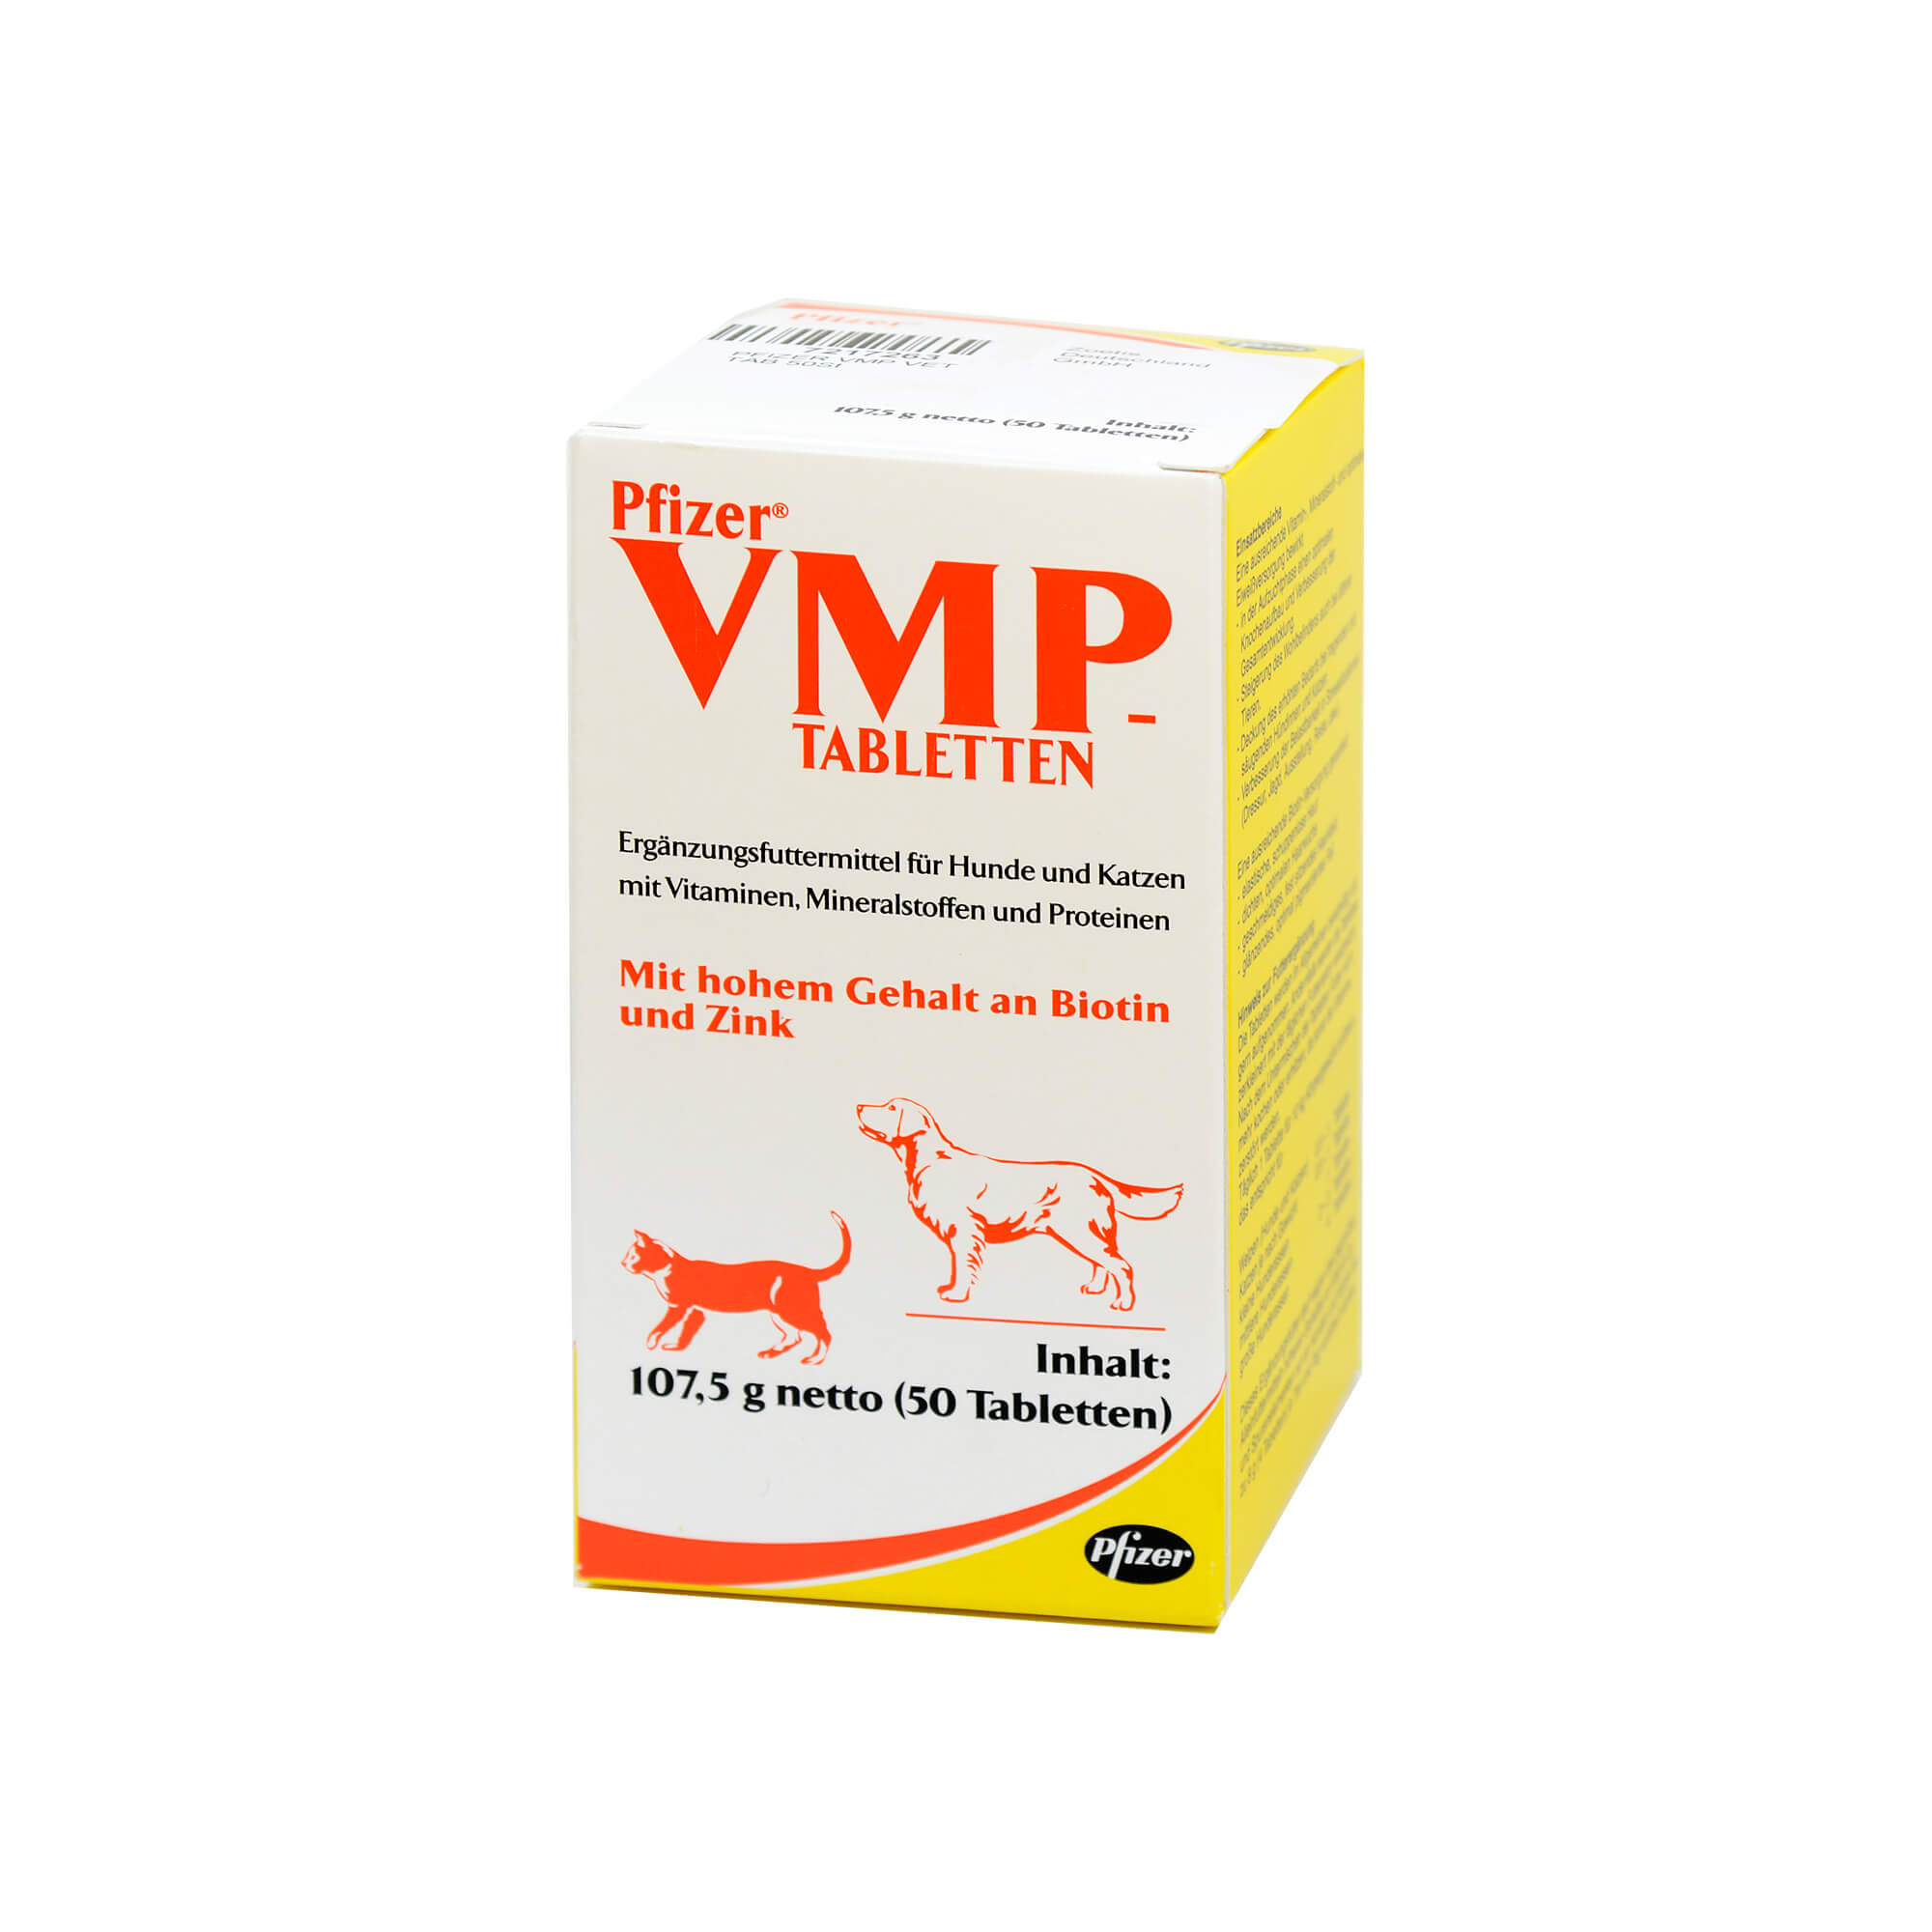 Vitaminisiertes Ergänzungsfuttermittel mit Mineralstoffen für Hunde und Katzen.